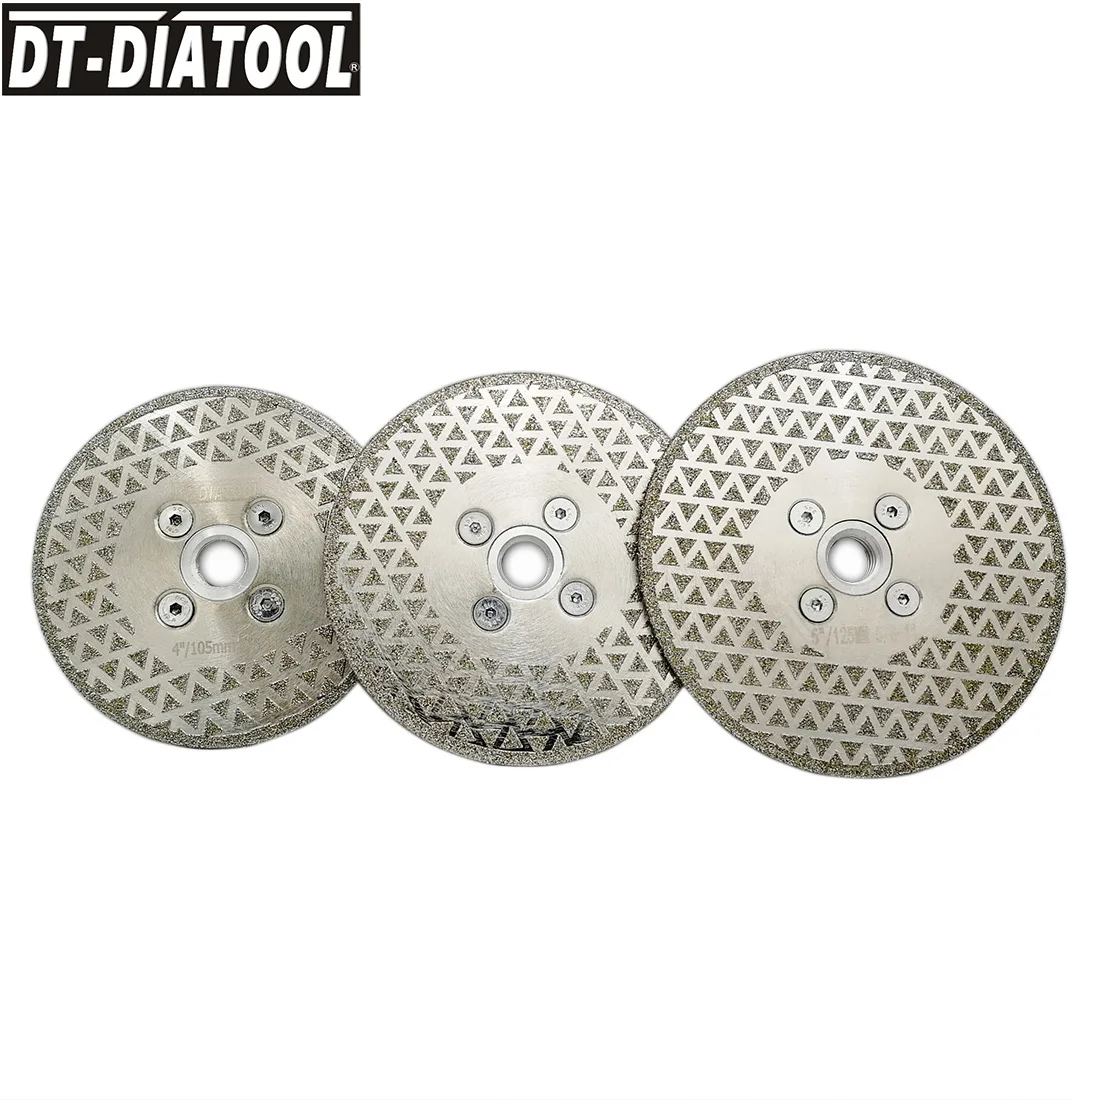 DT-DIATOOL-Lâminas de serra galvanizadas do corte do disco do diamante, moedura para a telha, granito de mármore, 105mm, 115mm, 125mm, 1 Pc, 2 PCes, 3 PCes, 5 PCes